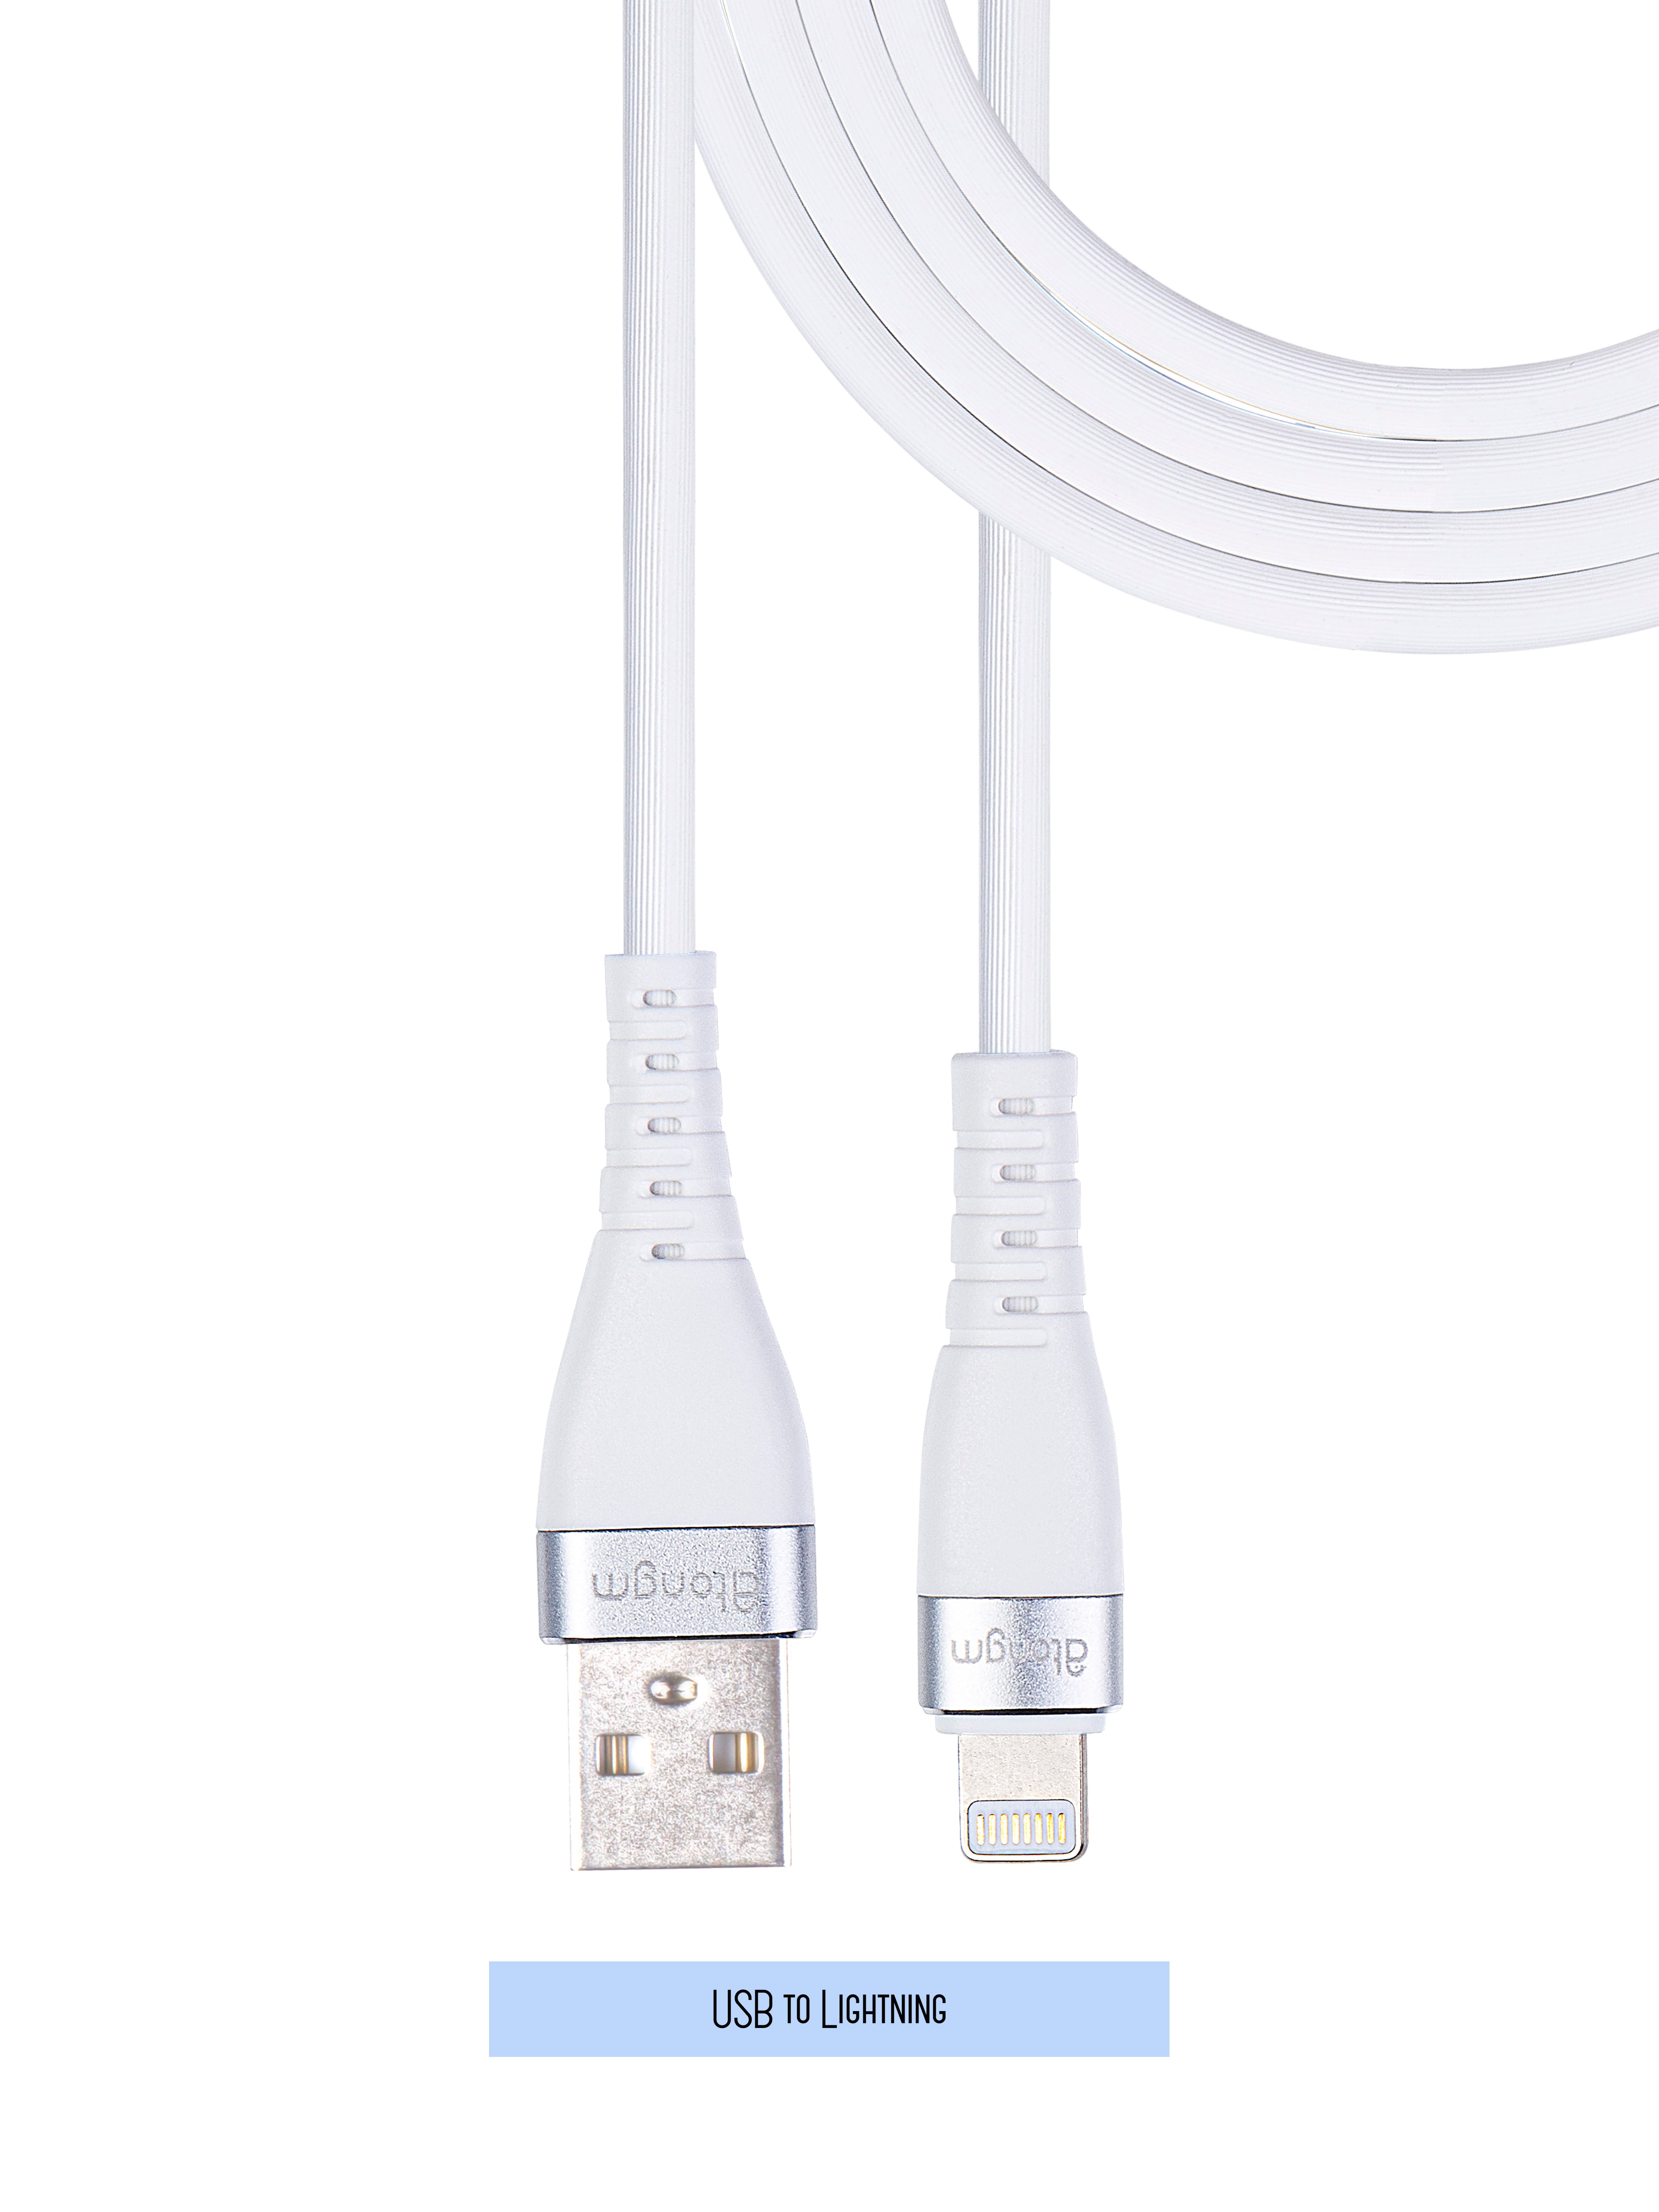 atongm 3A/60W USB to Lightning Şarj ve Data Kablo (1.2 Metre) Lisanslı Made For Apple